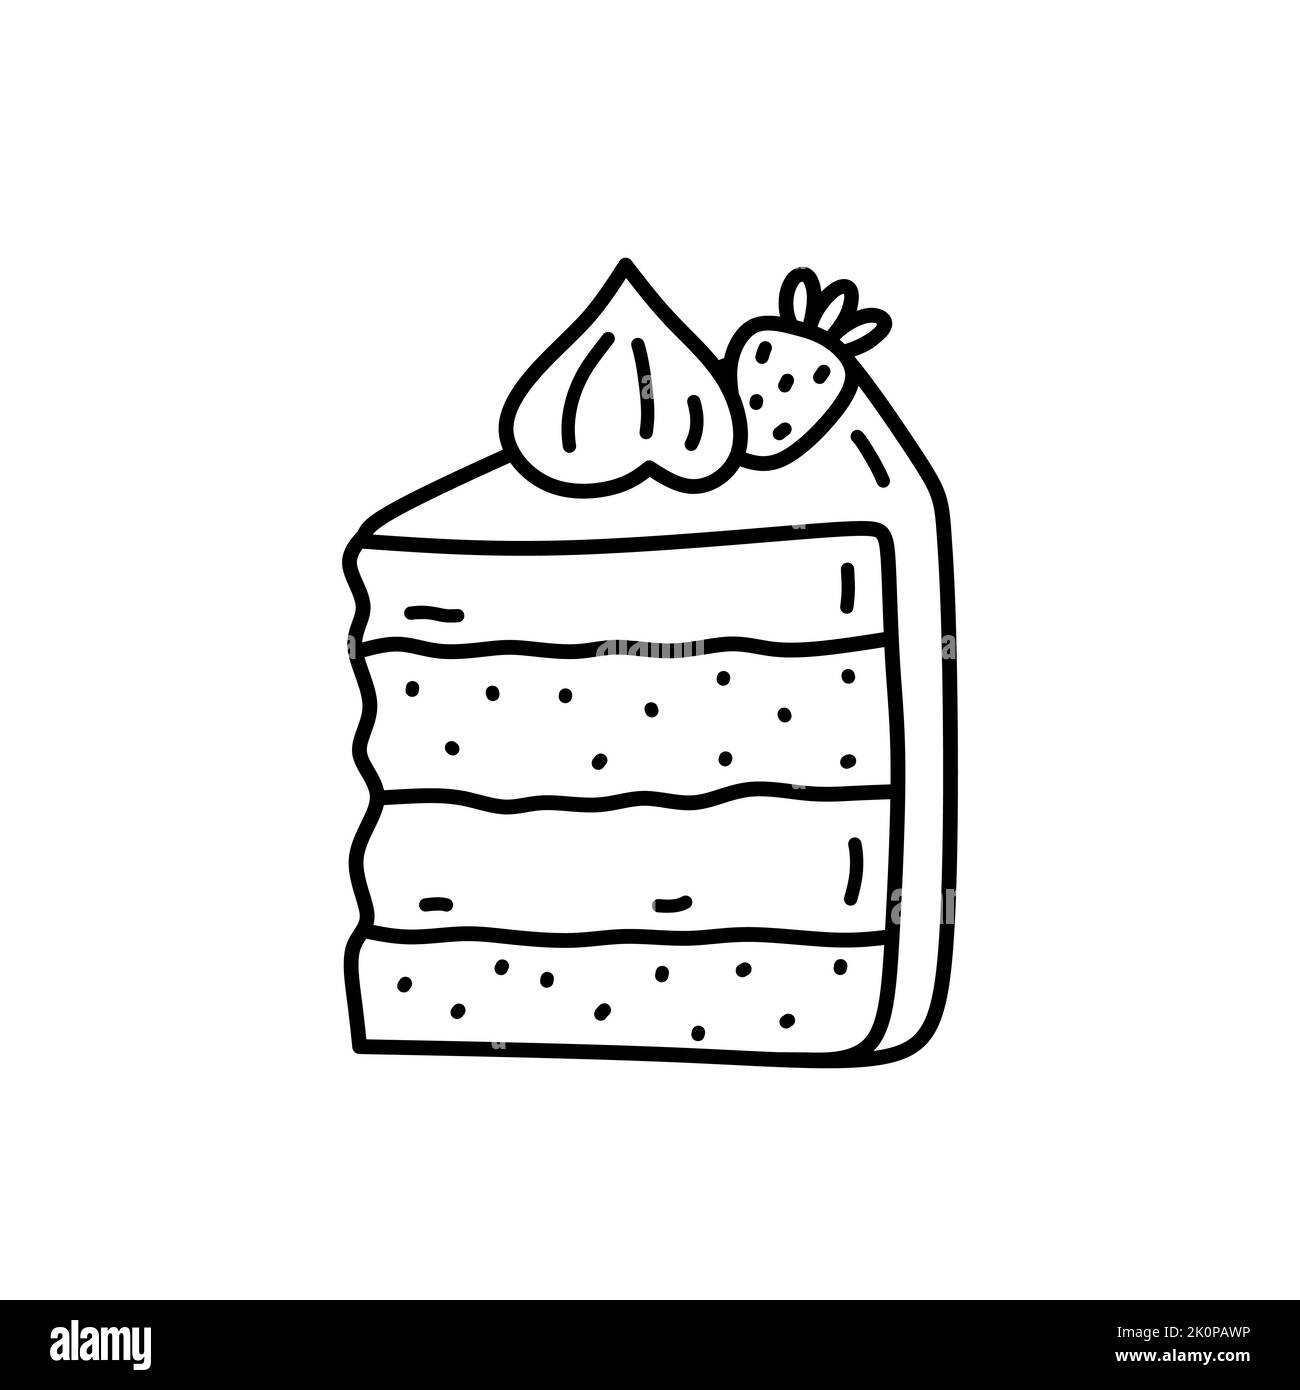 Pezzo di torta con fragola isolata su fondo bianco. Dessert carino, cibo dolce. Disegno vettoriale a mano in stile doodle. Perfetto per vari disegni, schede, decorazioni, logo, menu. Illustrazione Vettoriale